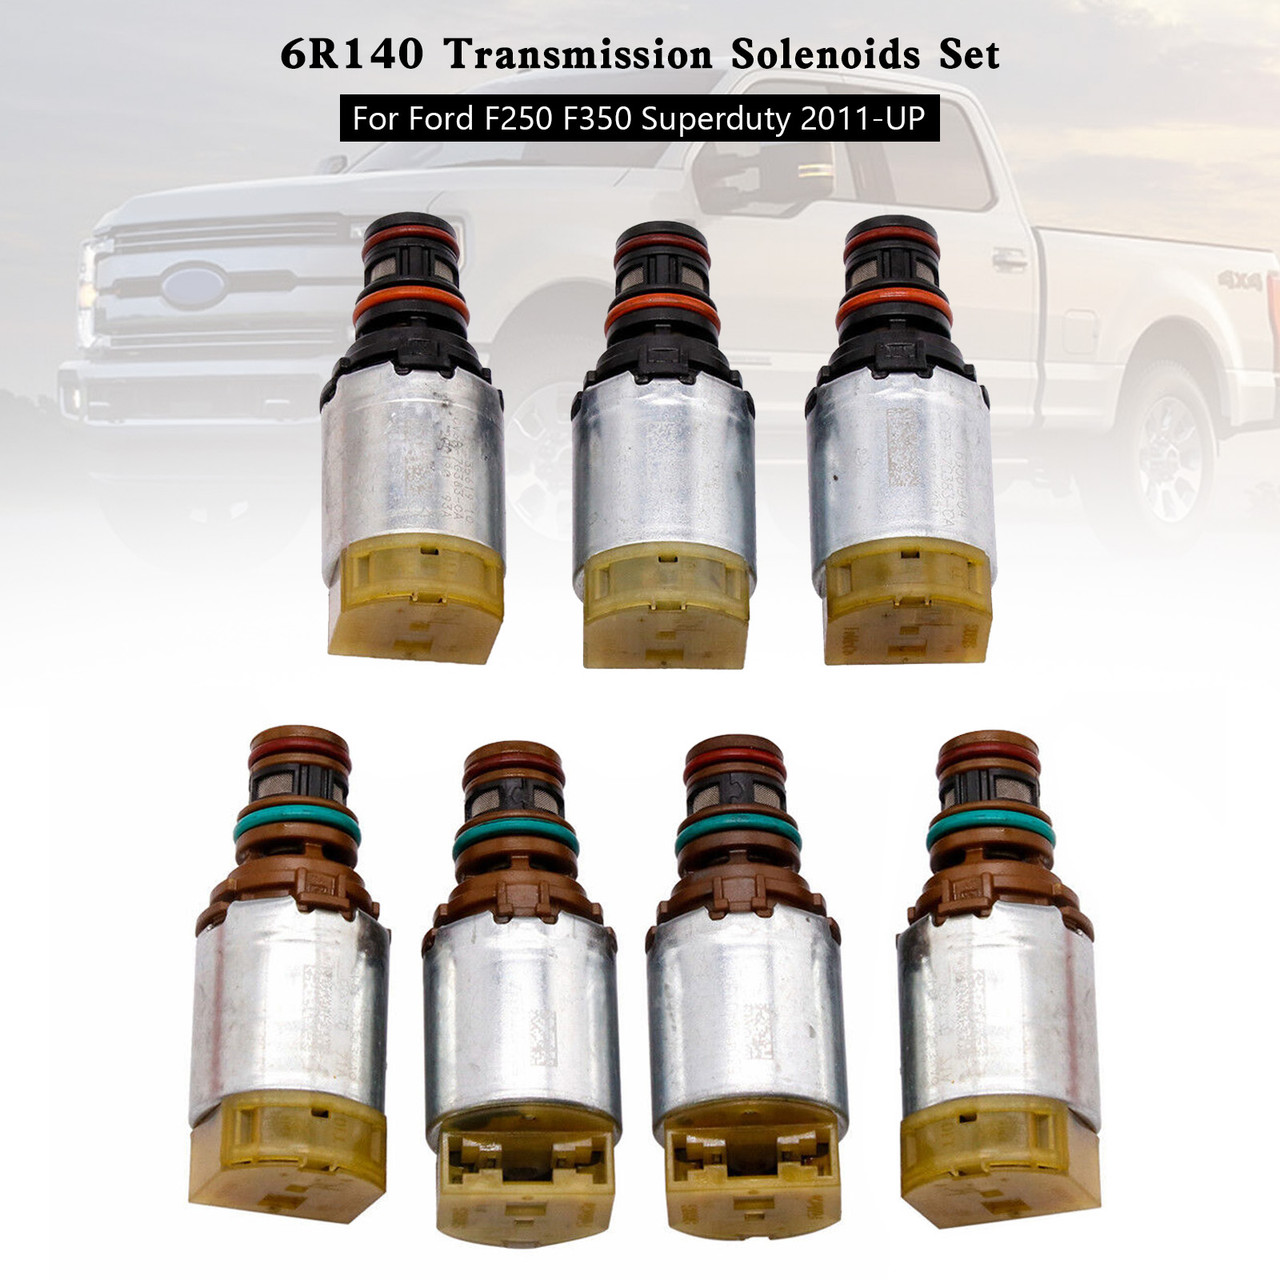 6R140 Transmission Solenoids Set For Ford F250 F350 Superduty 2011-UP